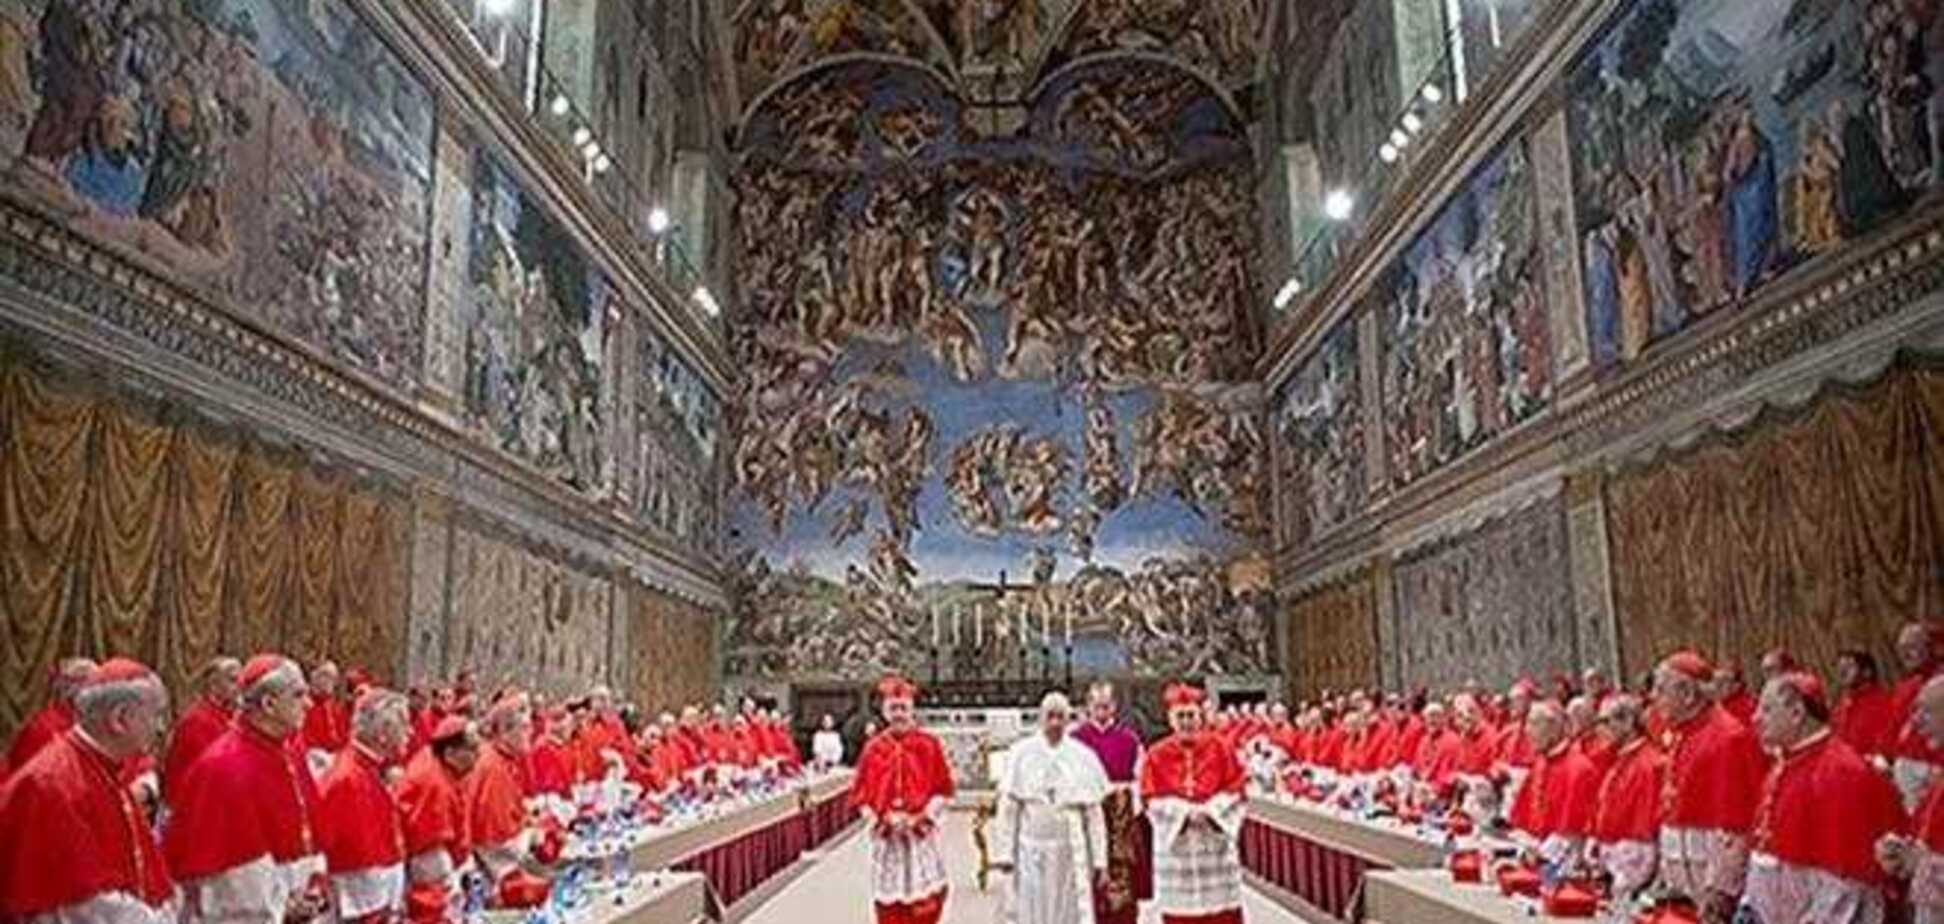 Папа Франциск крестит детей в Сикстинской капелле. Трансляция из Ватикана